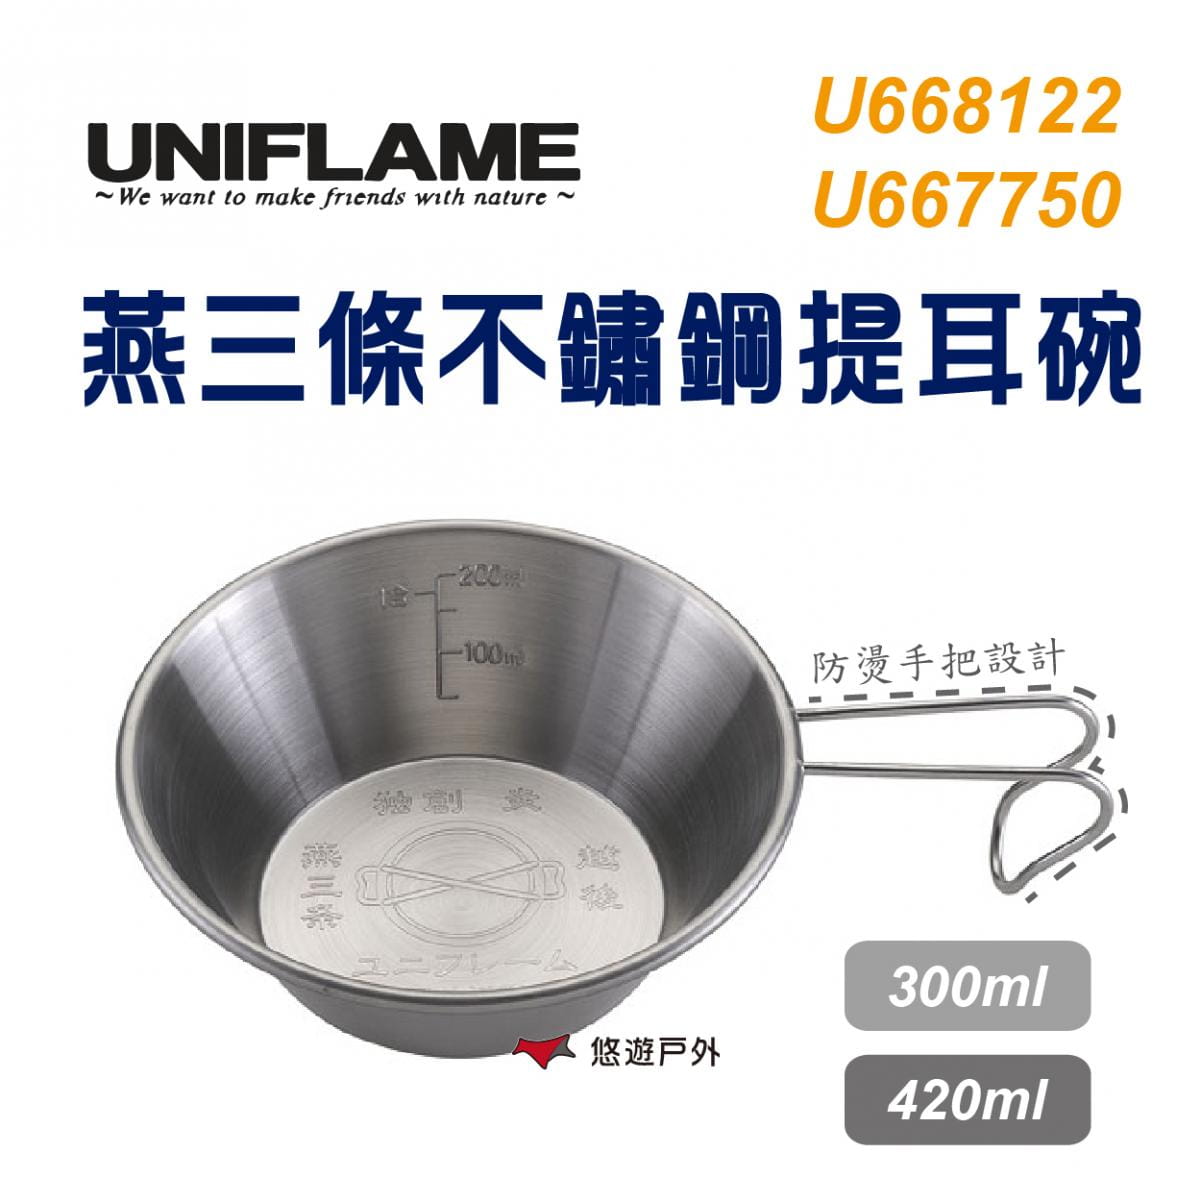 【UNIFLAME】U667750 日本 燕三條不鏽鋼提耳碗420ml 燕三條製 不銹鋼 提耳碗 0